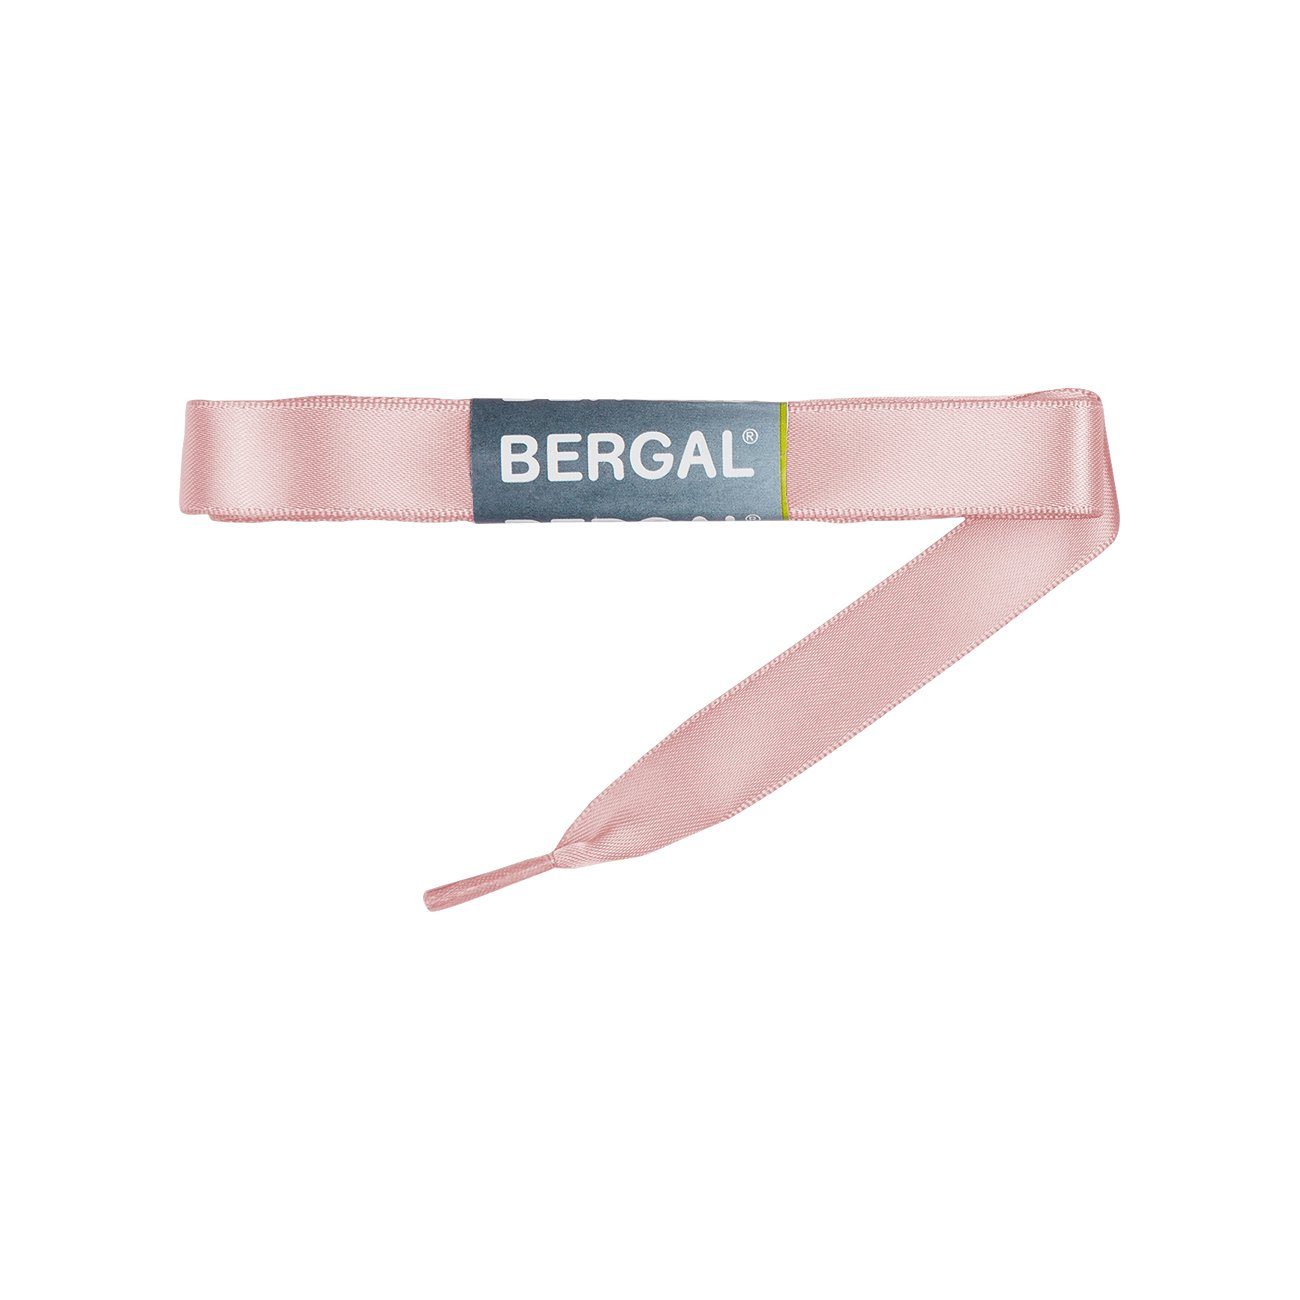 Bergal Schnürsenkel Satinsenkel Flach ca. 15 mm breit Rosa | Schnürsenkel